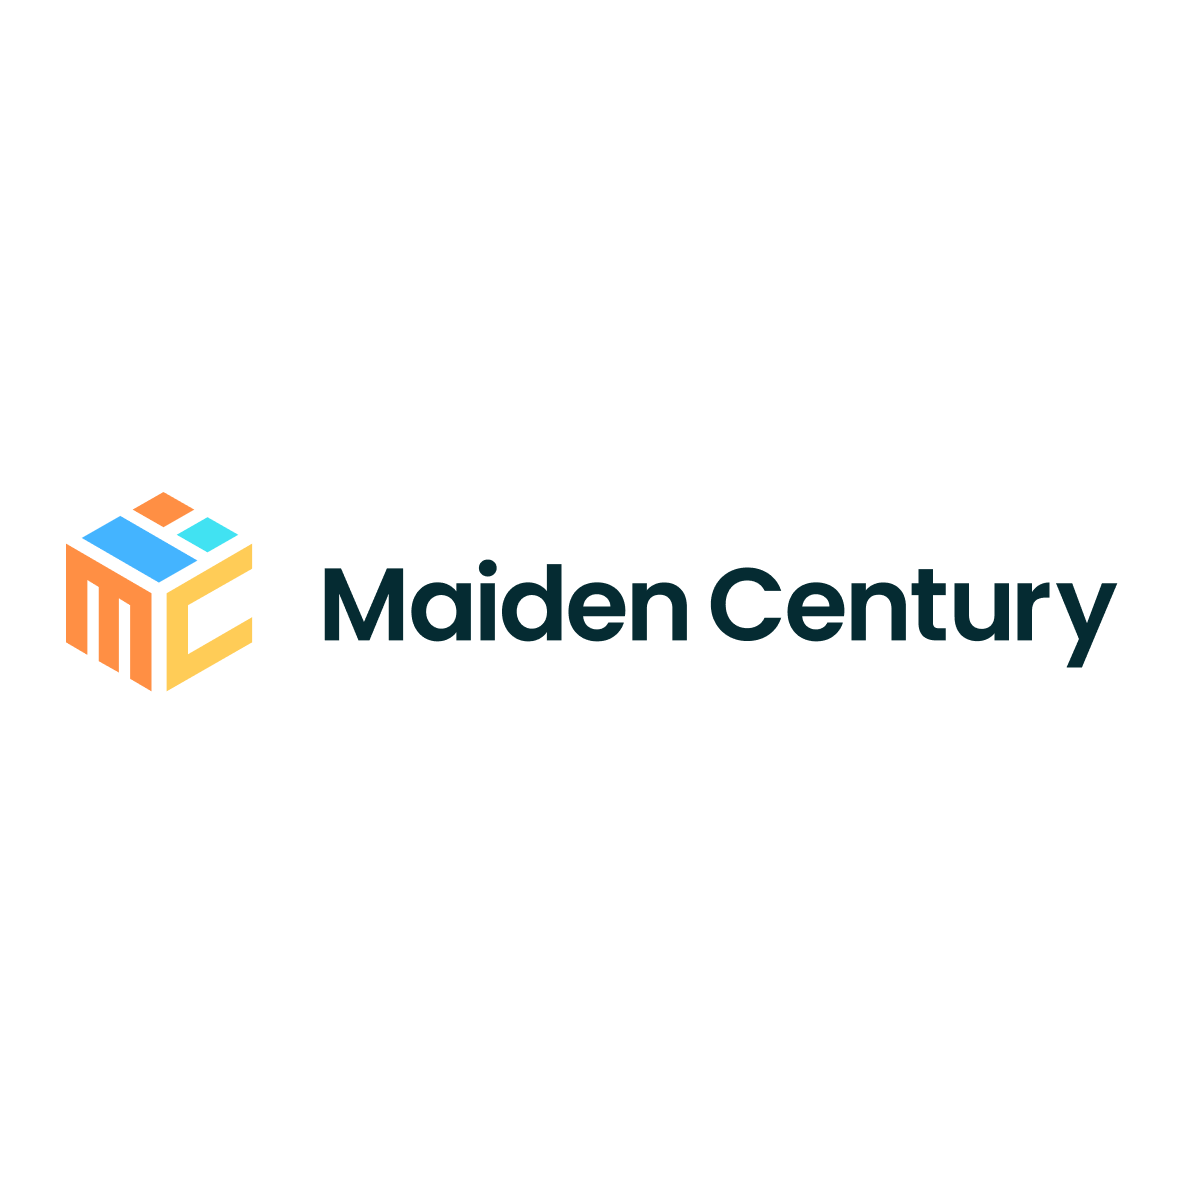 Maiden Century